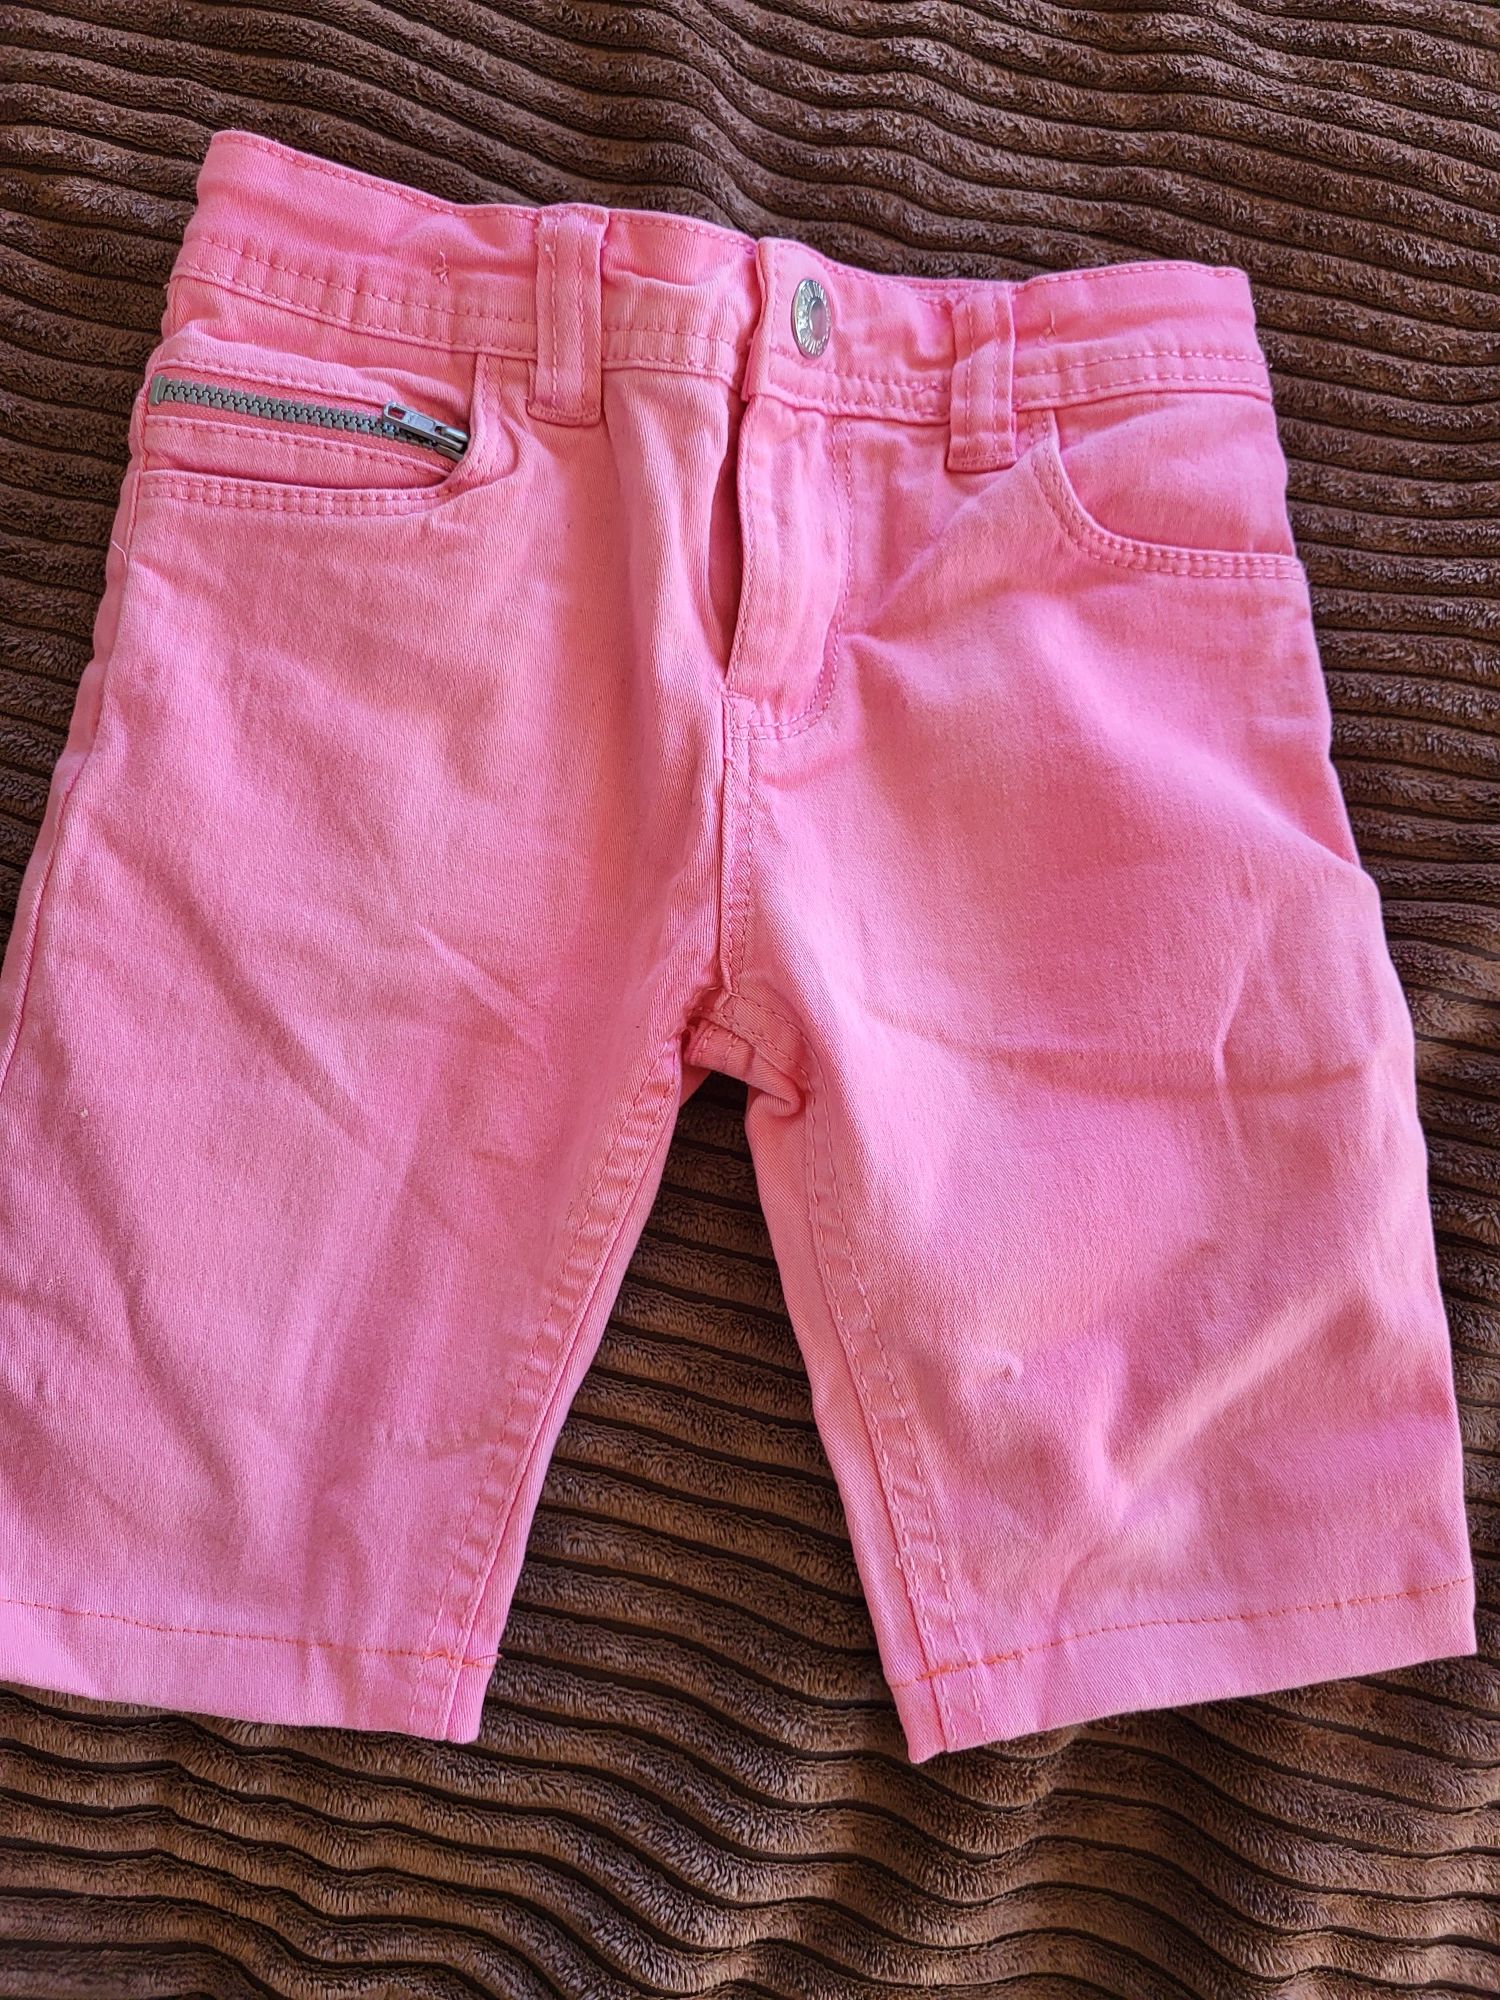 Spodnie krótkie jeans rozowe 104